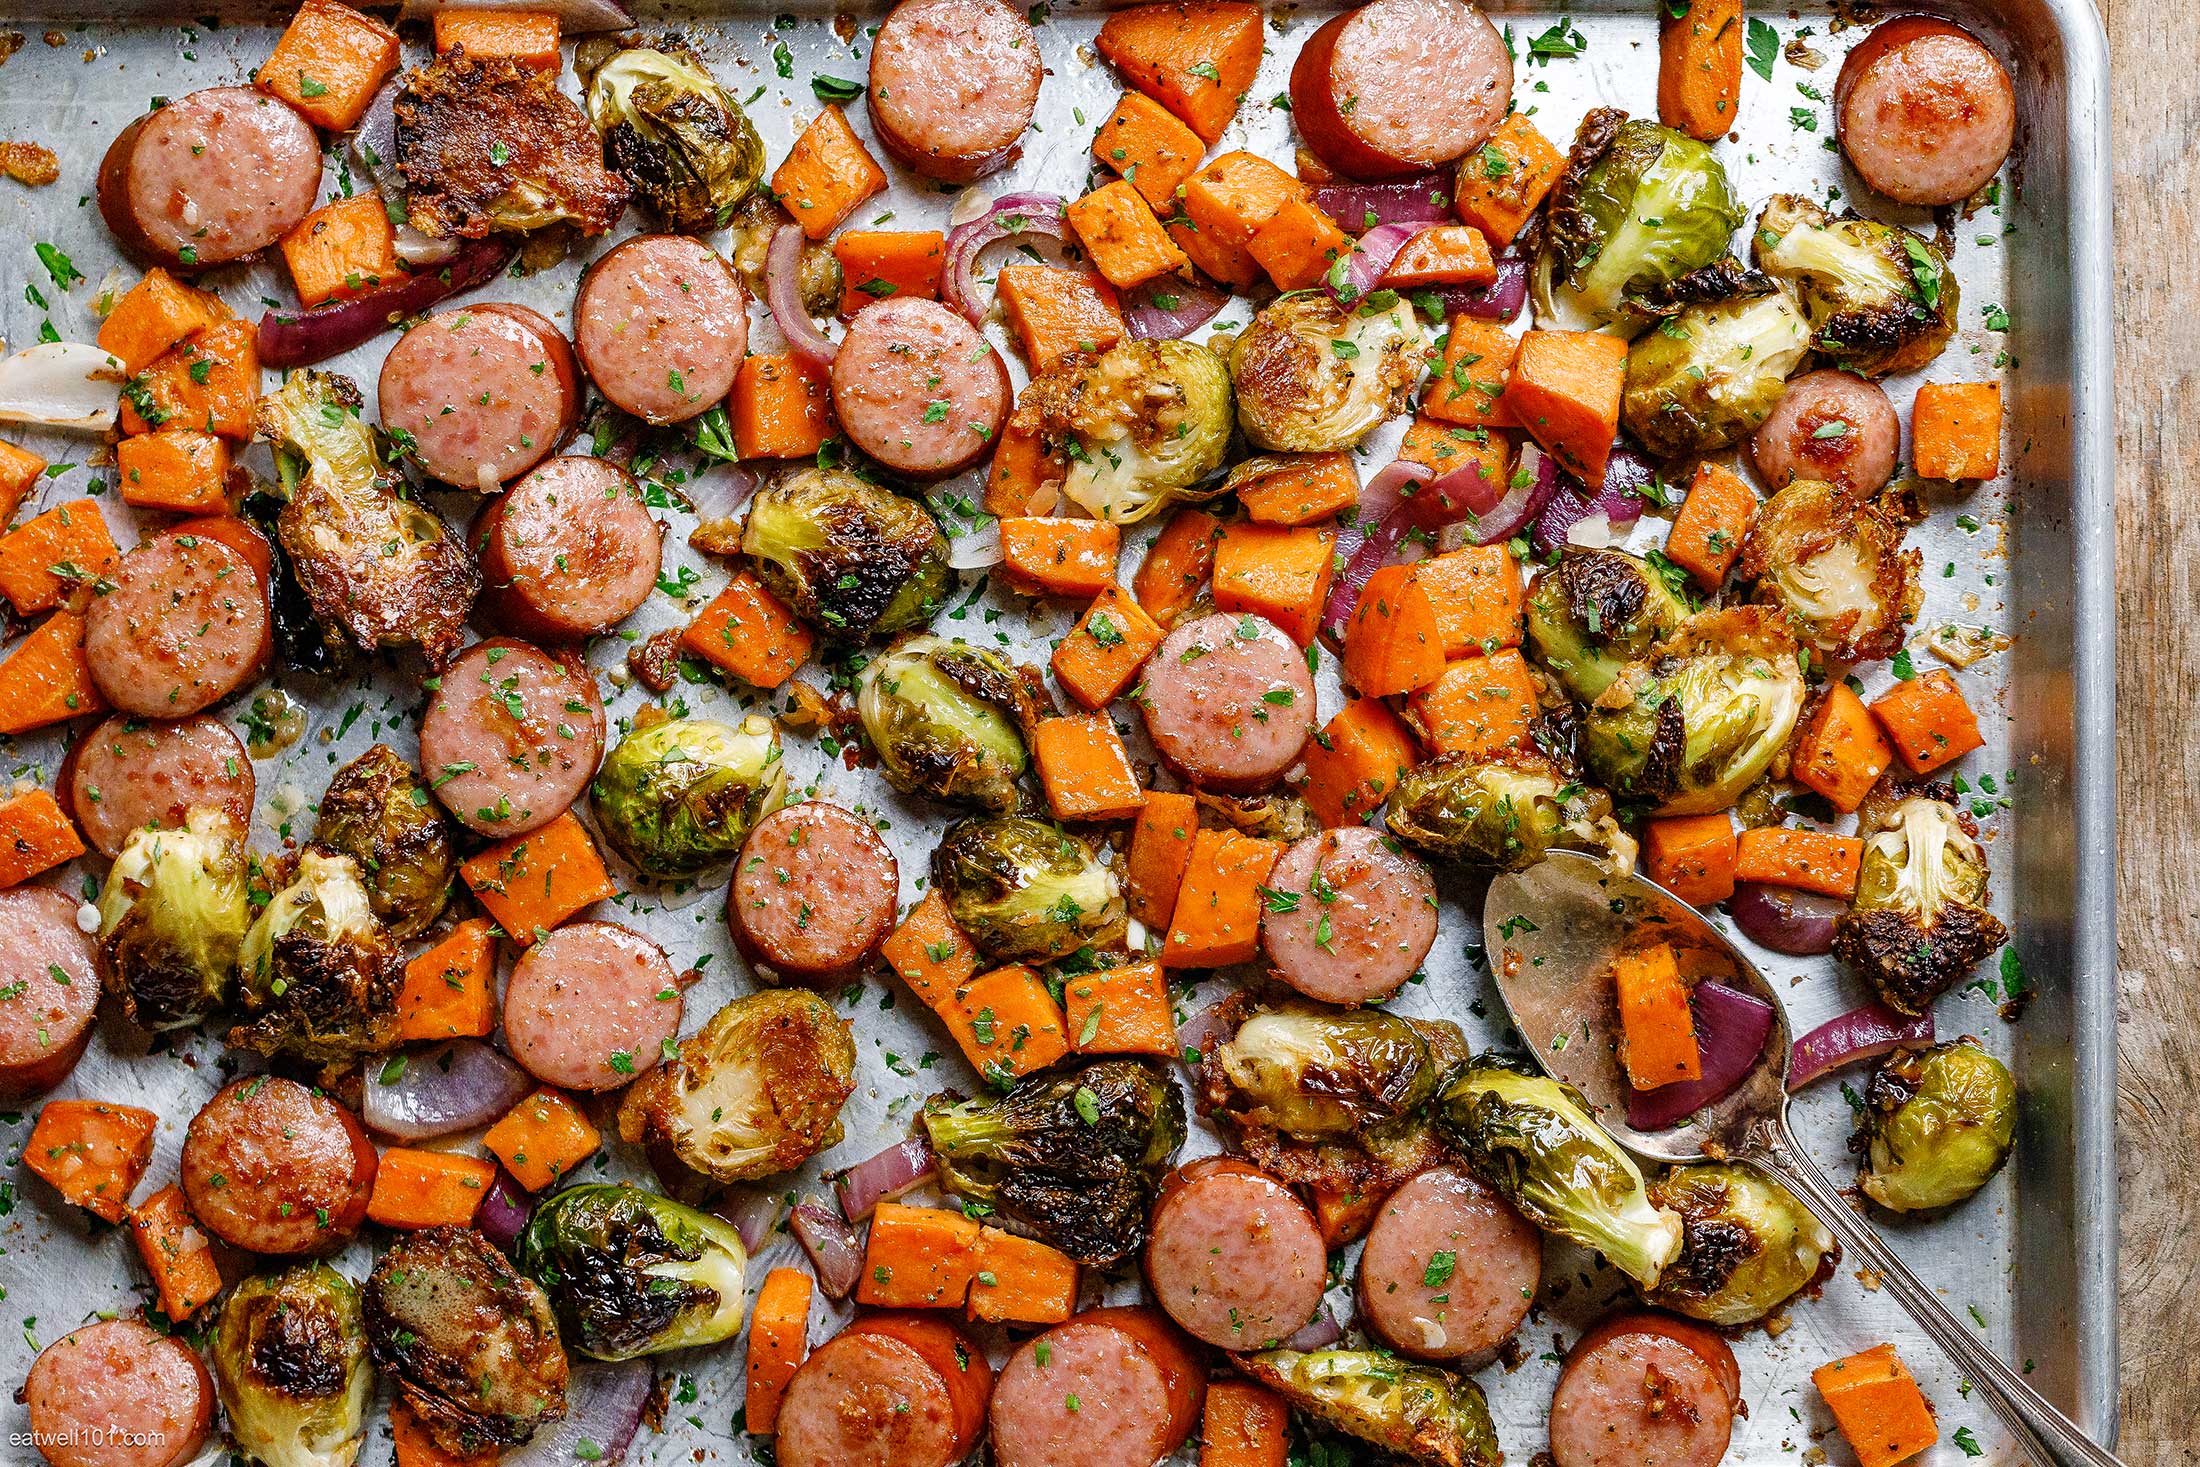 Sheet-Pan Maple-Dijon Sausage and Fall Veggies Recipe – Sheet Pan Dinner  Recipe — Eatwell101